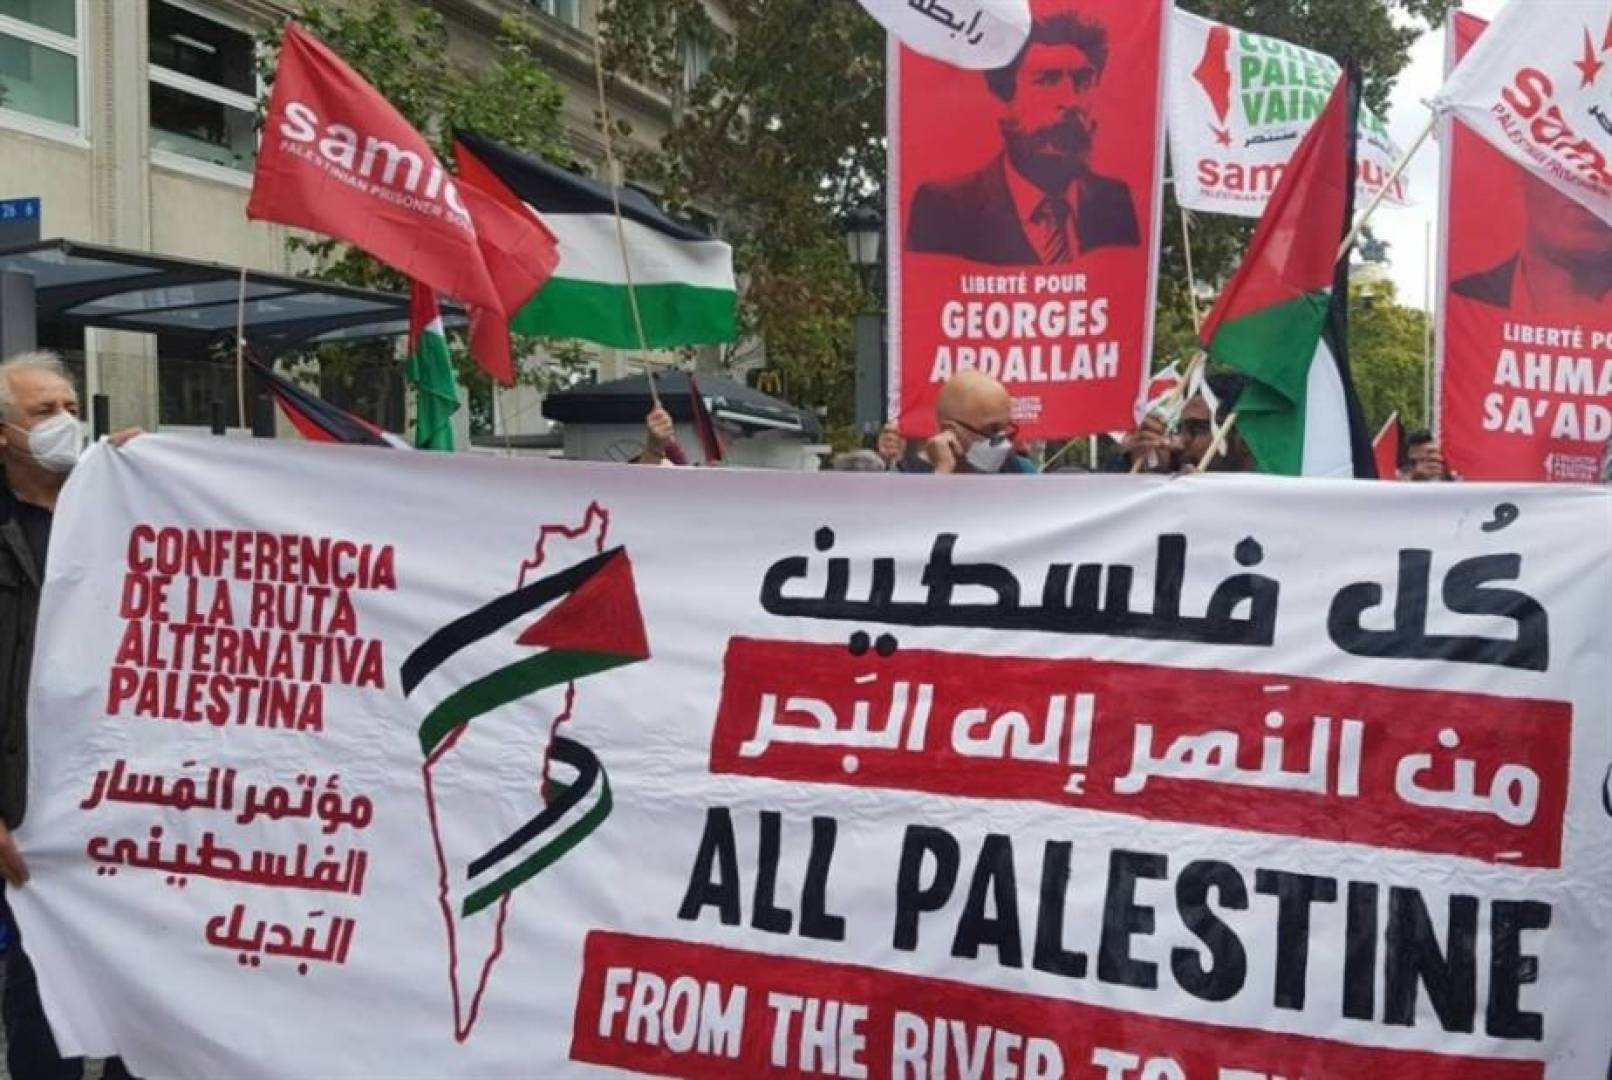 المسار الثوري الفلسطيني البديل/ بديل ضبابي, تقويض اليسار لصالح اليمين والدين السياسي